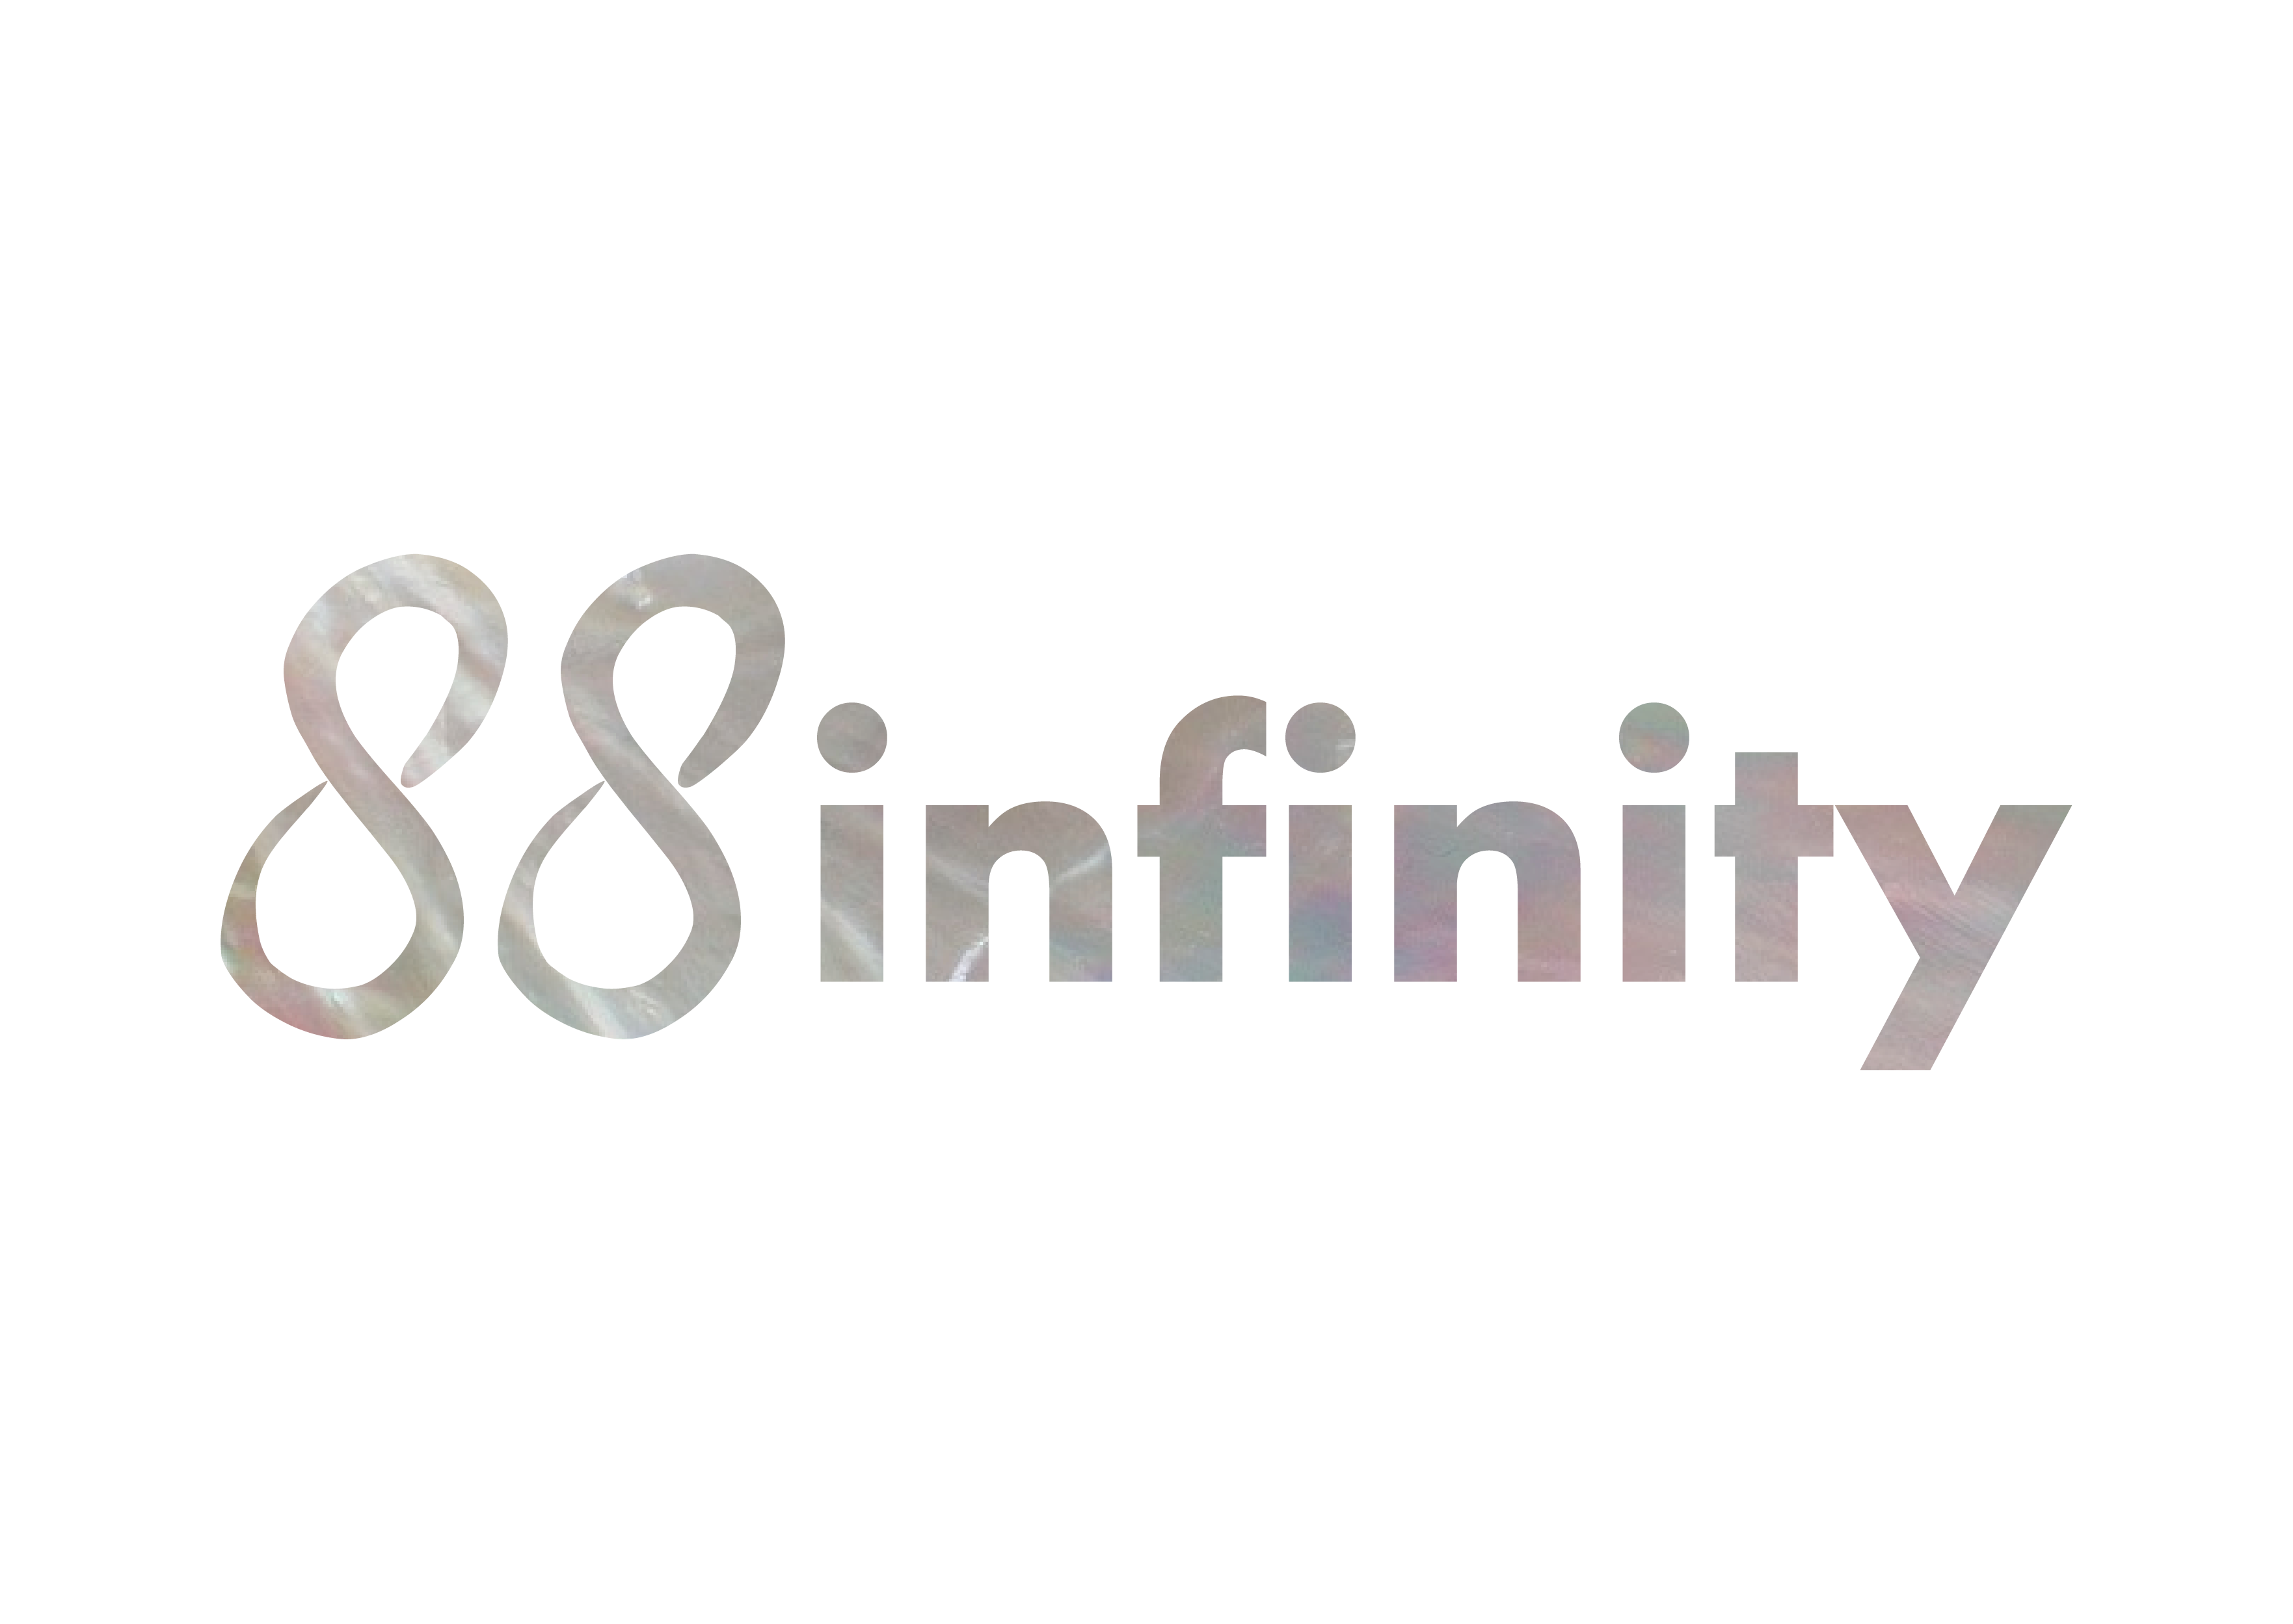 88 Infinity